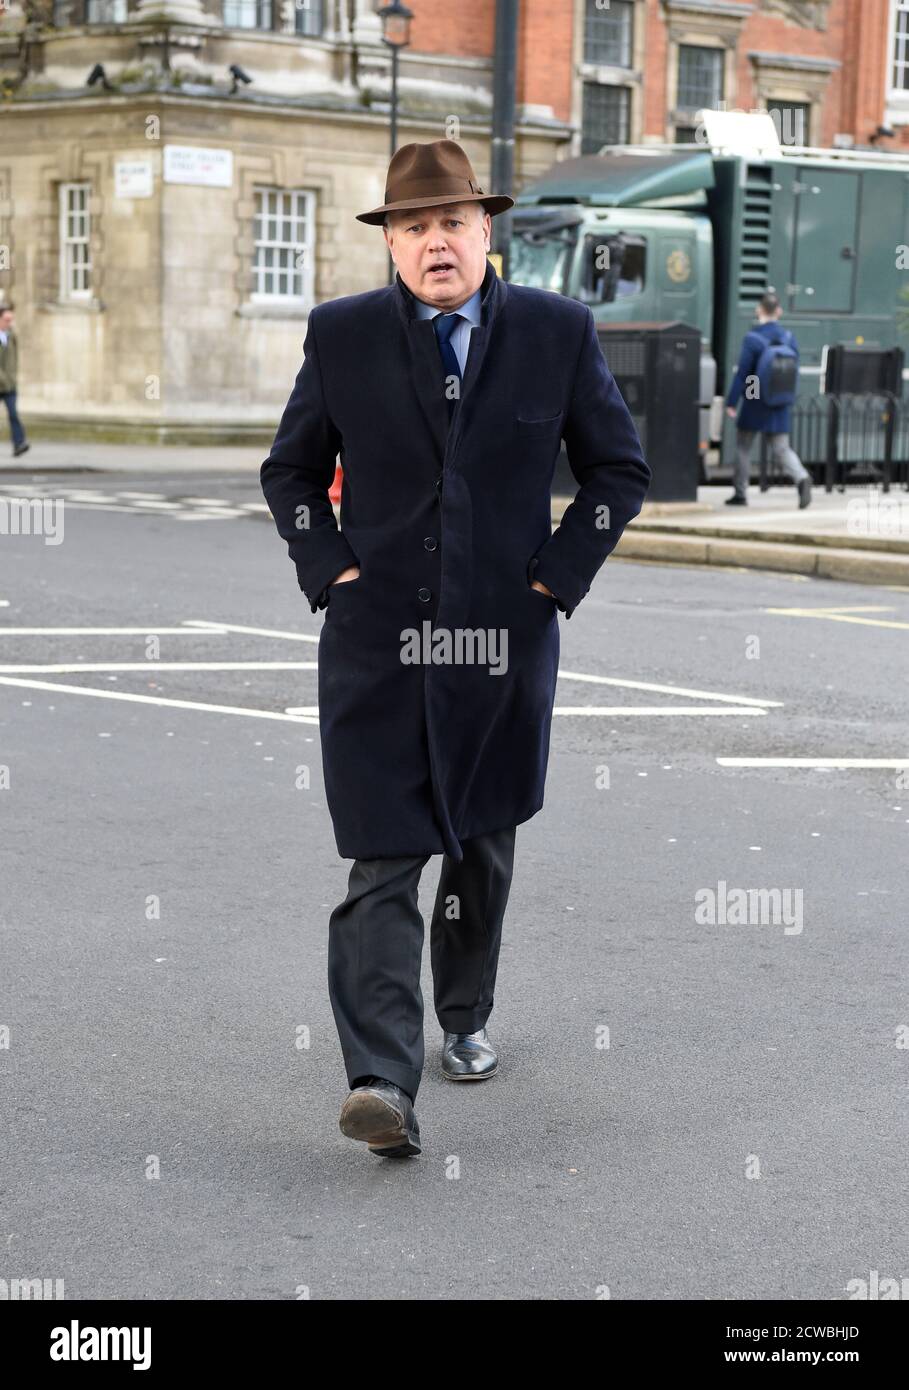 Foto von Iain Duncan Smith. Sir George Iain Duncan Smith (1954-) ein britischer konservativer Politiker. Stockfoto